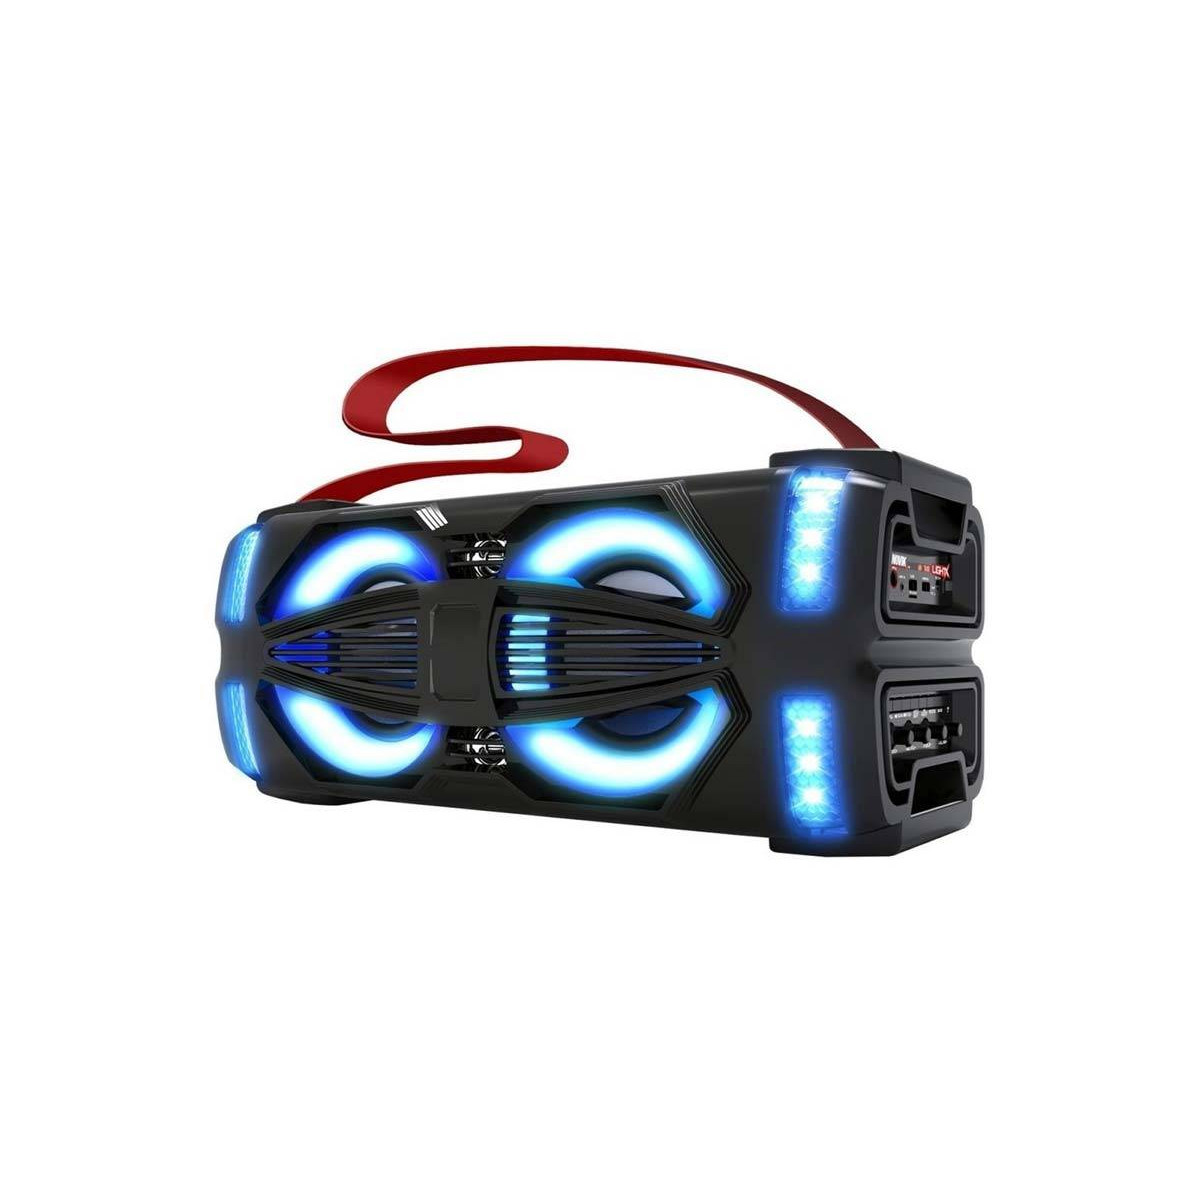 PARLANTE RADIO USB/BLUETOOTH CON MICROFONO - Novicompu